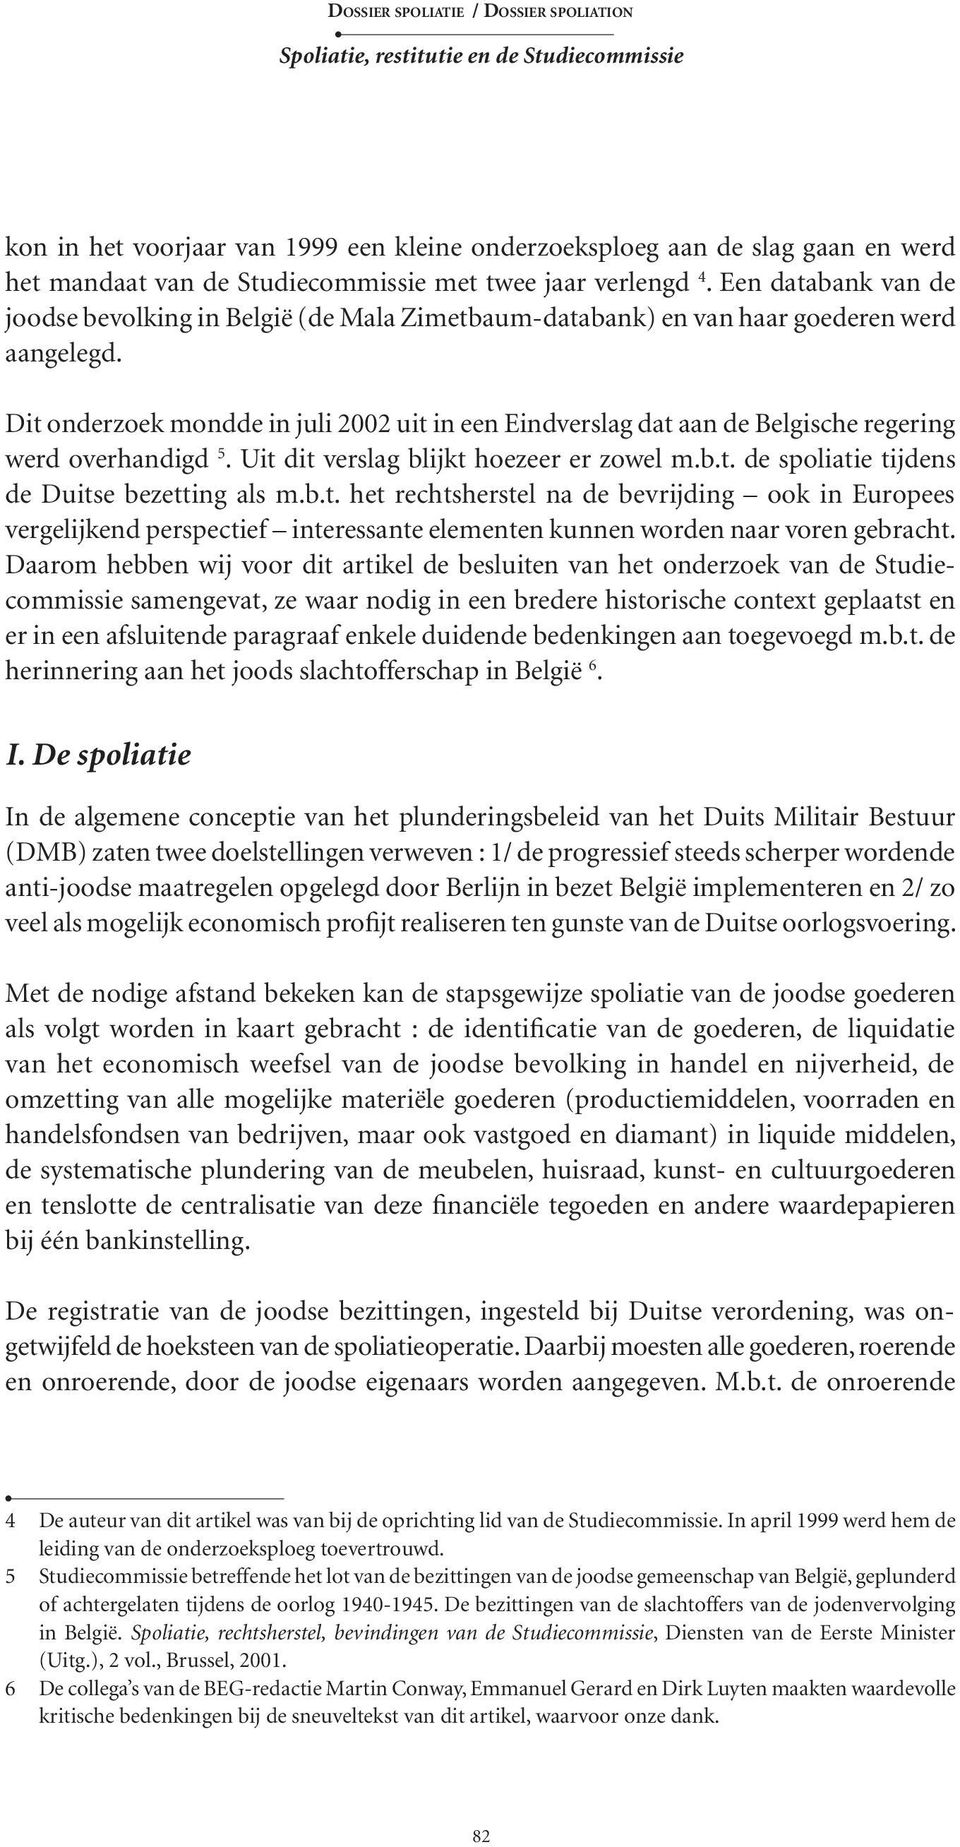 Dit onderzoek mondde in juli 2002 uit in een Eindverslag dat aan de Belgische regering werd overhandigd 5. Uit dit verslag blijkt hoezeer er zowel m.b.t. de spoliatie tijdens de Duitse bezetting als m.